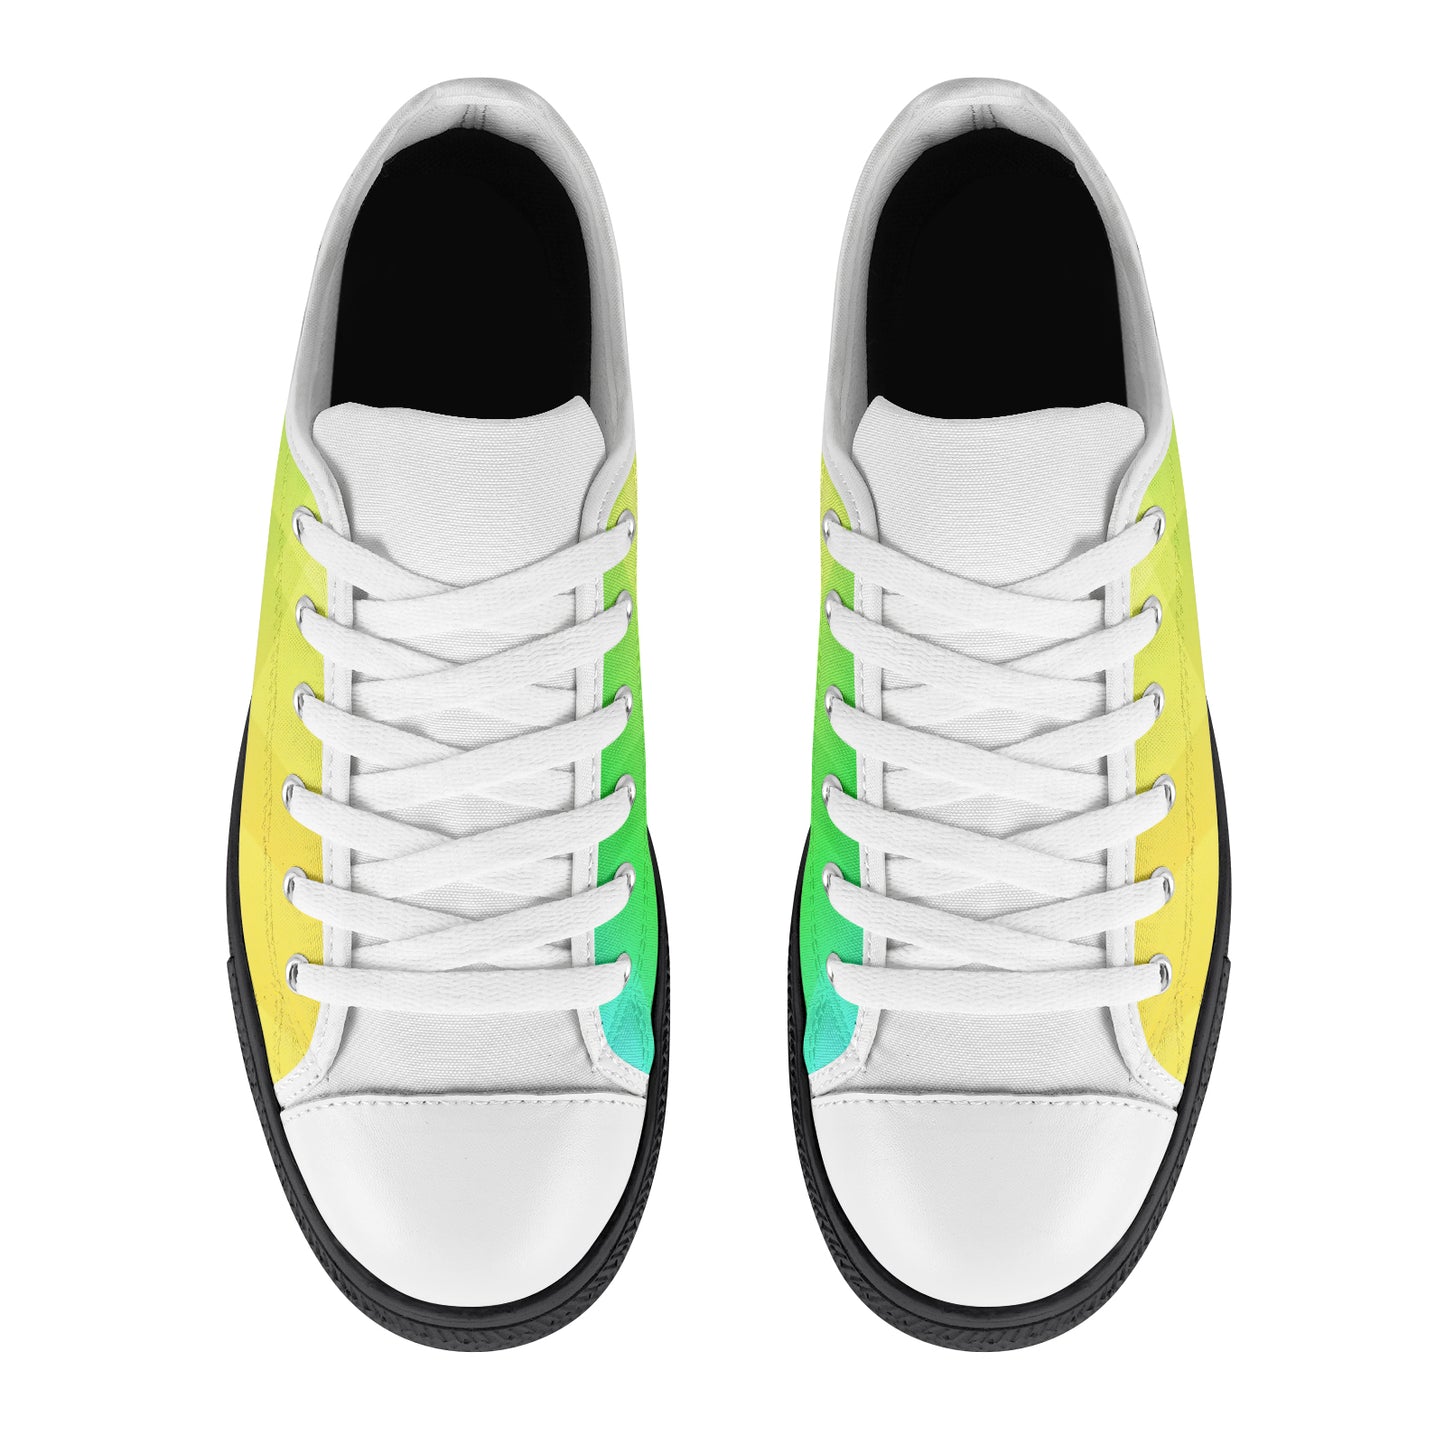 Women's Sneakers - Yellow/Green Pixel